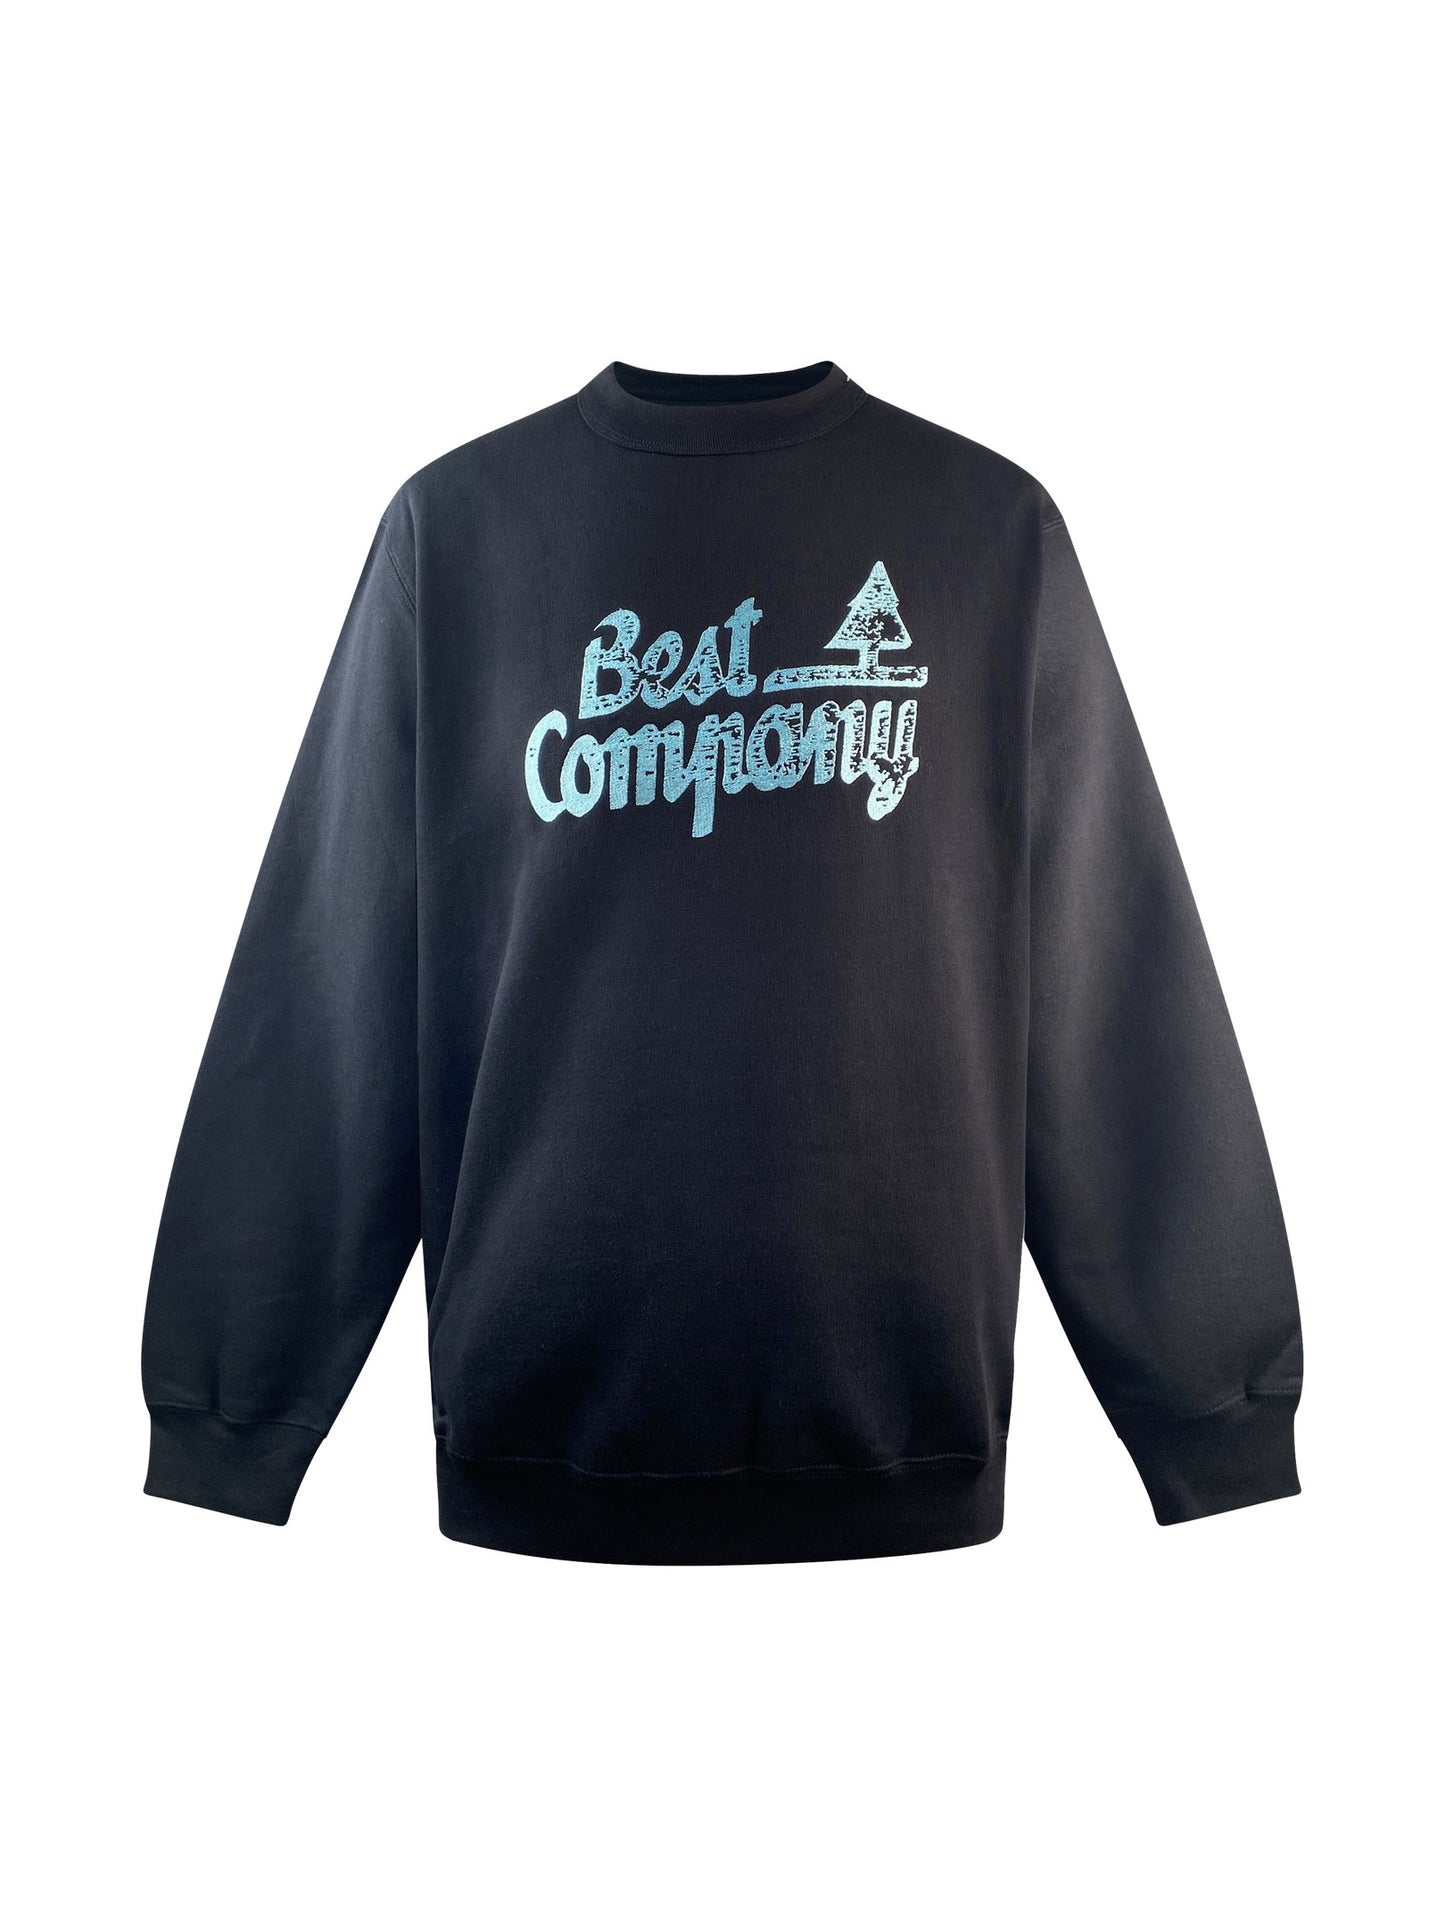 Best Company Sweater "Sweat Logo Ruff" -blackSweatshirt von Best Company.  Details:   Langarm und Rundhalsausschnitt Passform: Casual  Material: 100% Baumwolle Pflegehinweise: 40 ° Maschinenwäsche, auf links was